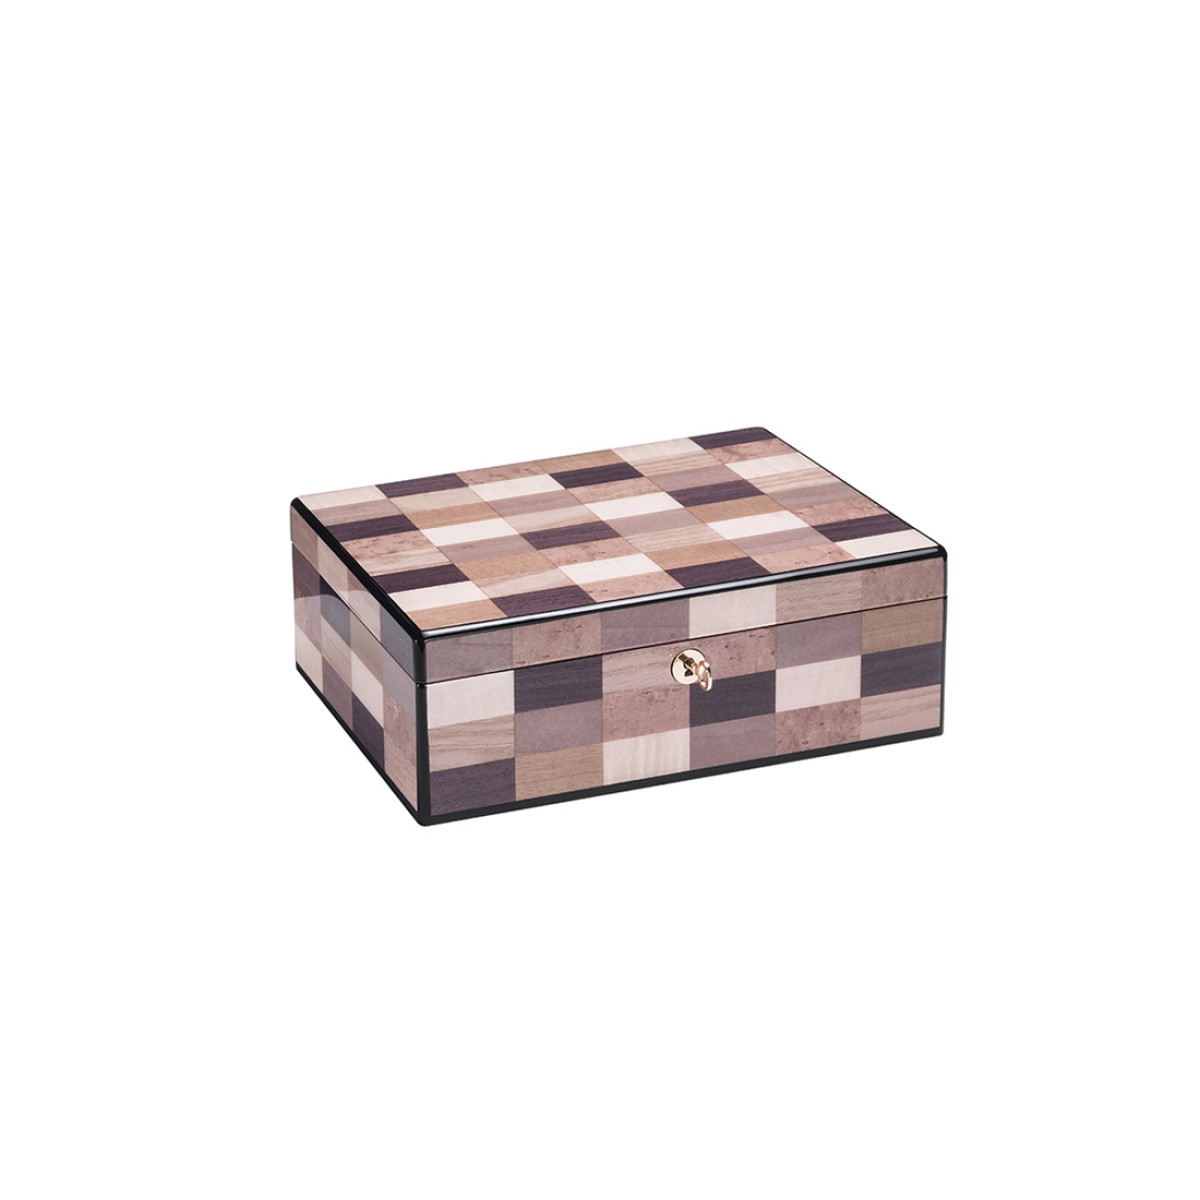 Jewel case - Sestiere wood